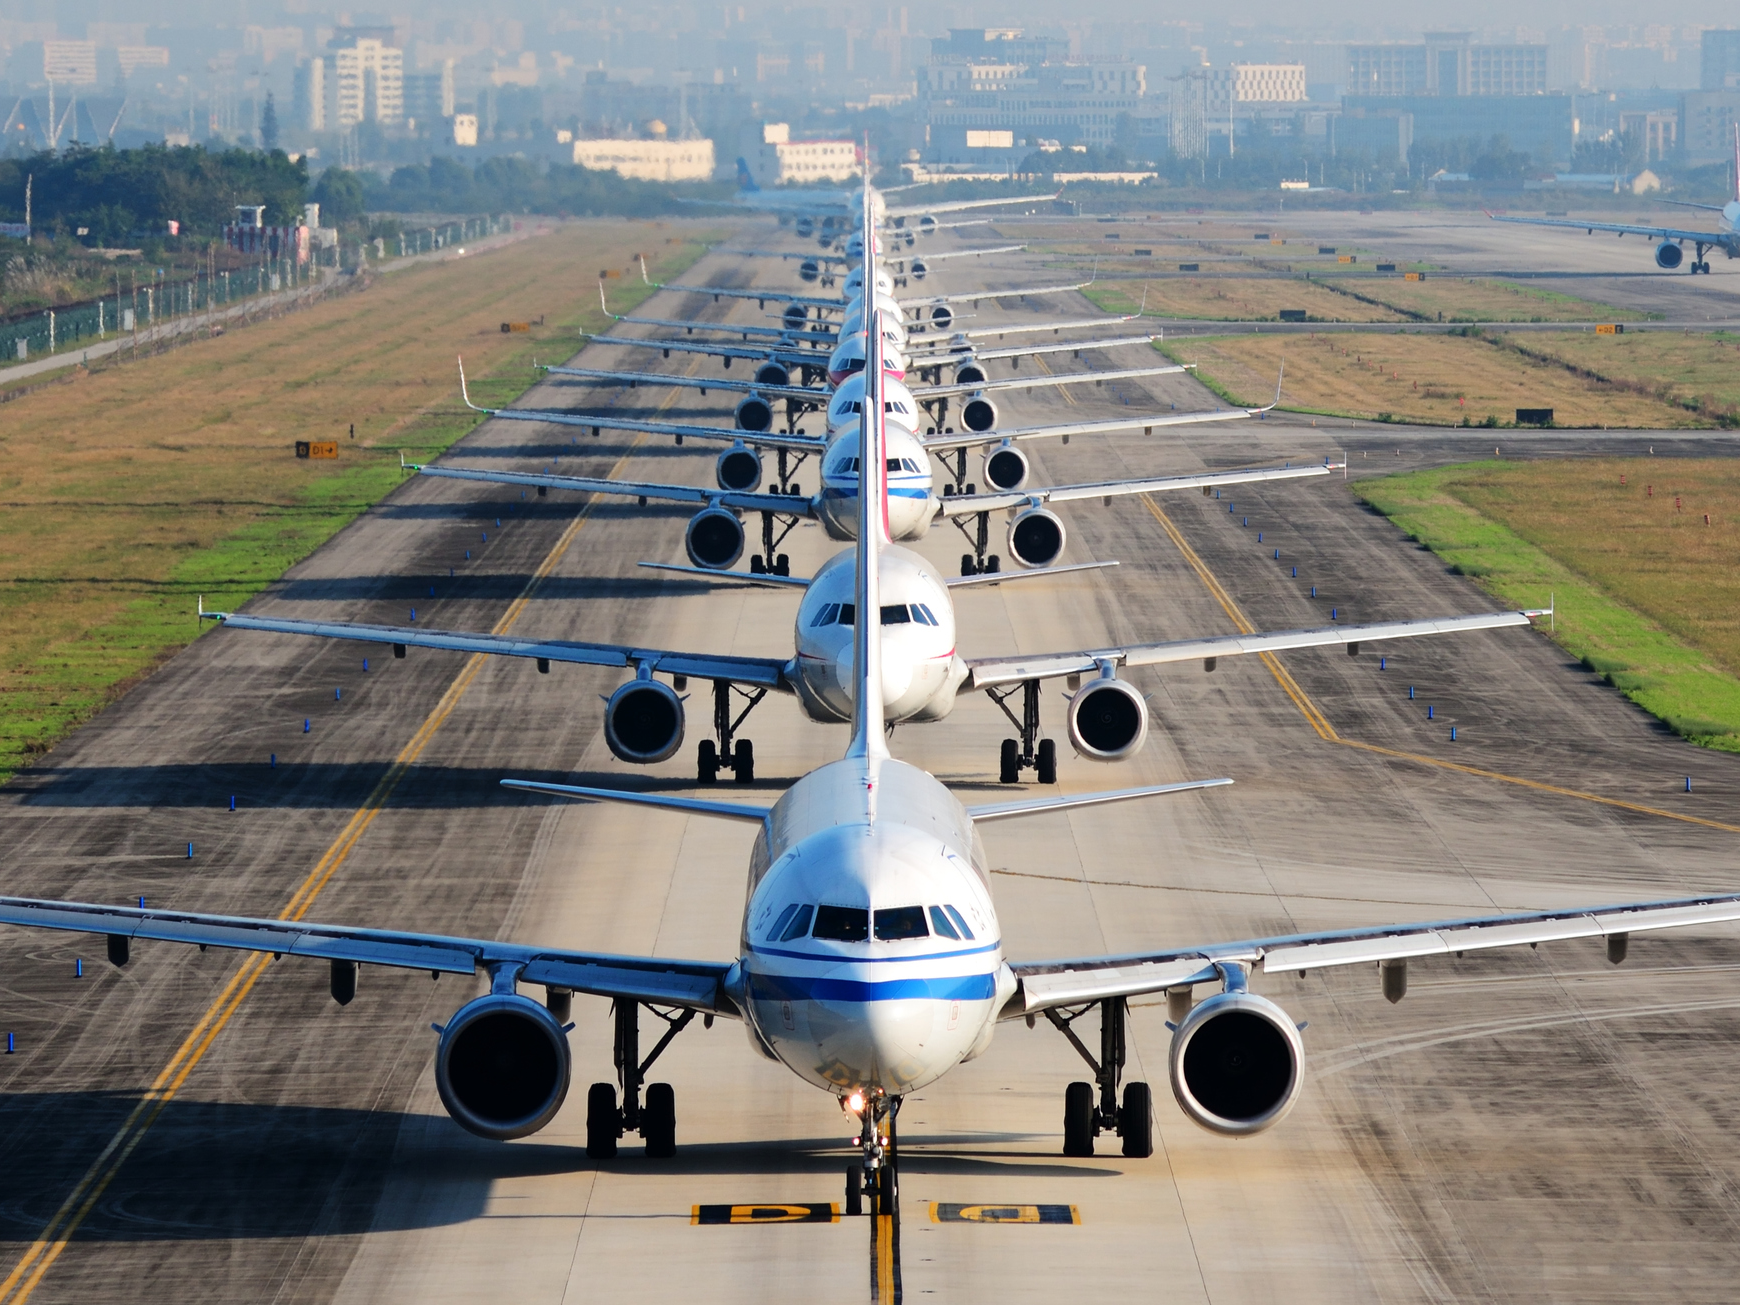 批判を浴びる航空会社の主な対策は新型機導入…デルタ航空はカーボン・ニュートラルに10億ドルを投じる | Business Insider Japan